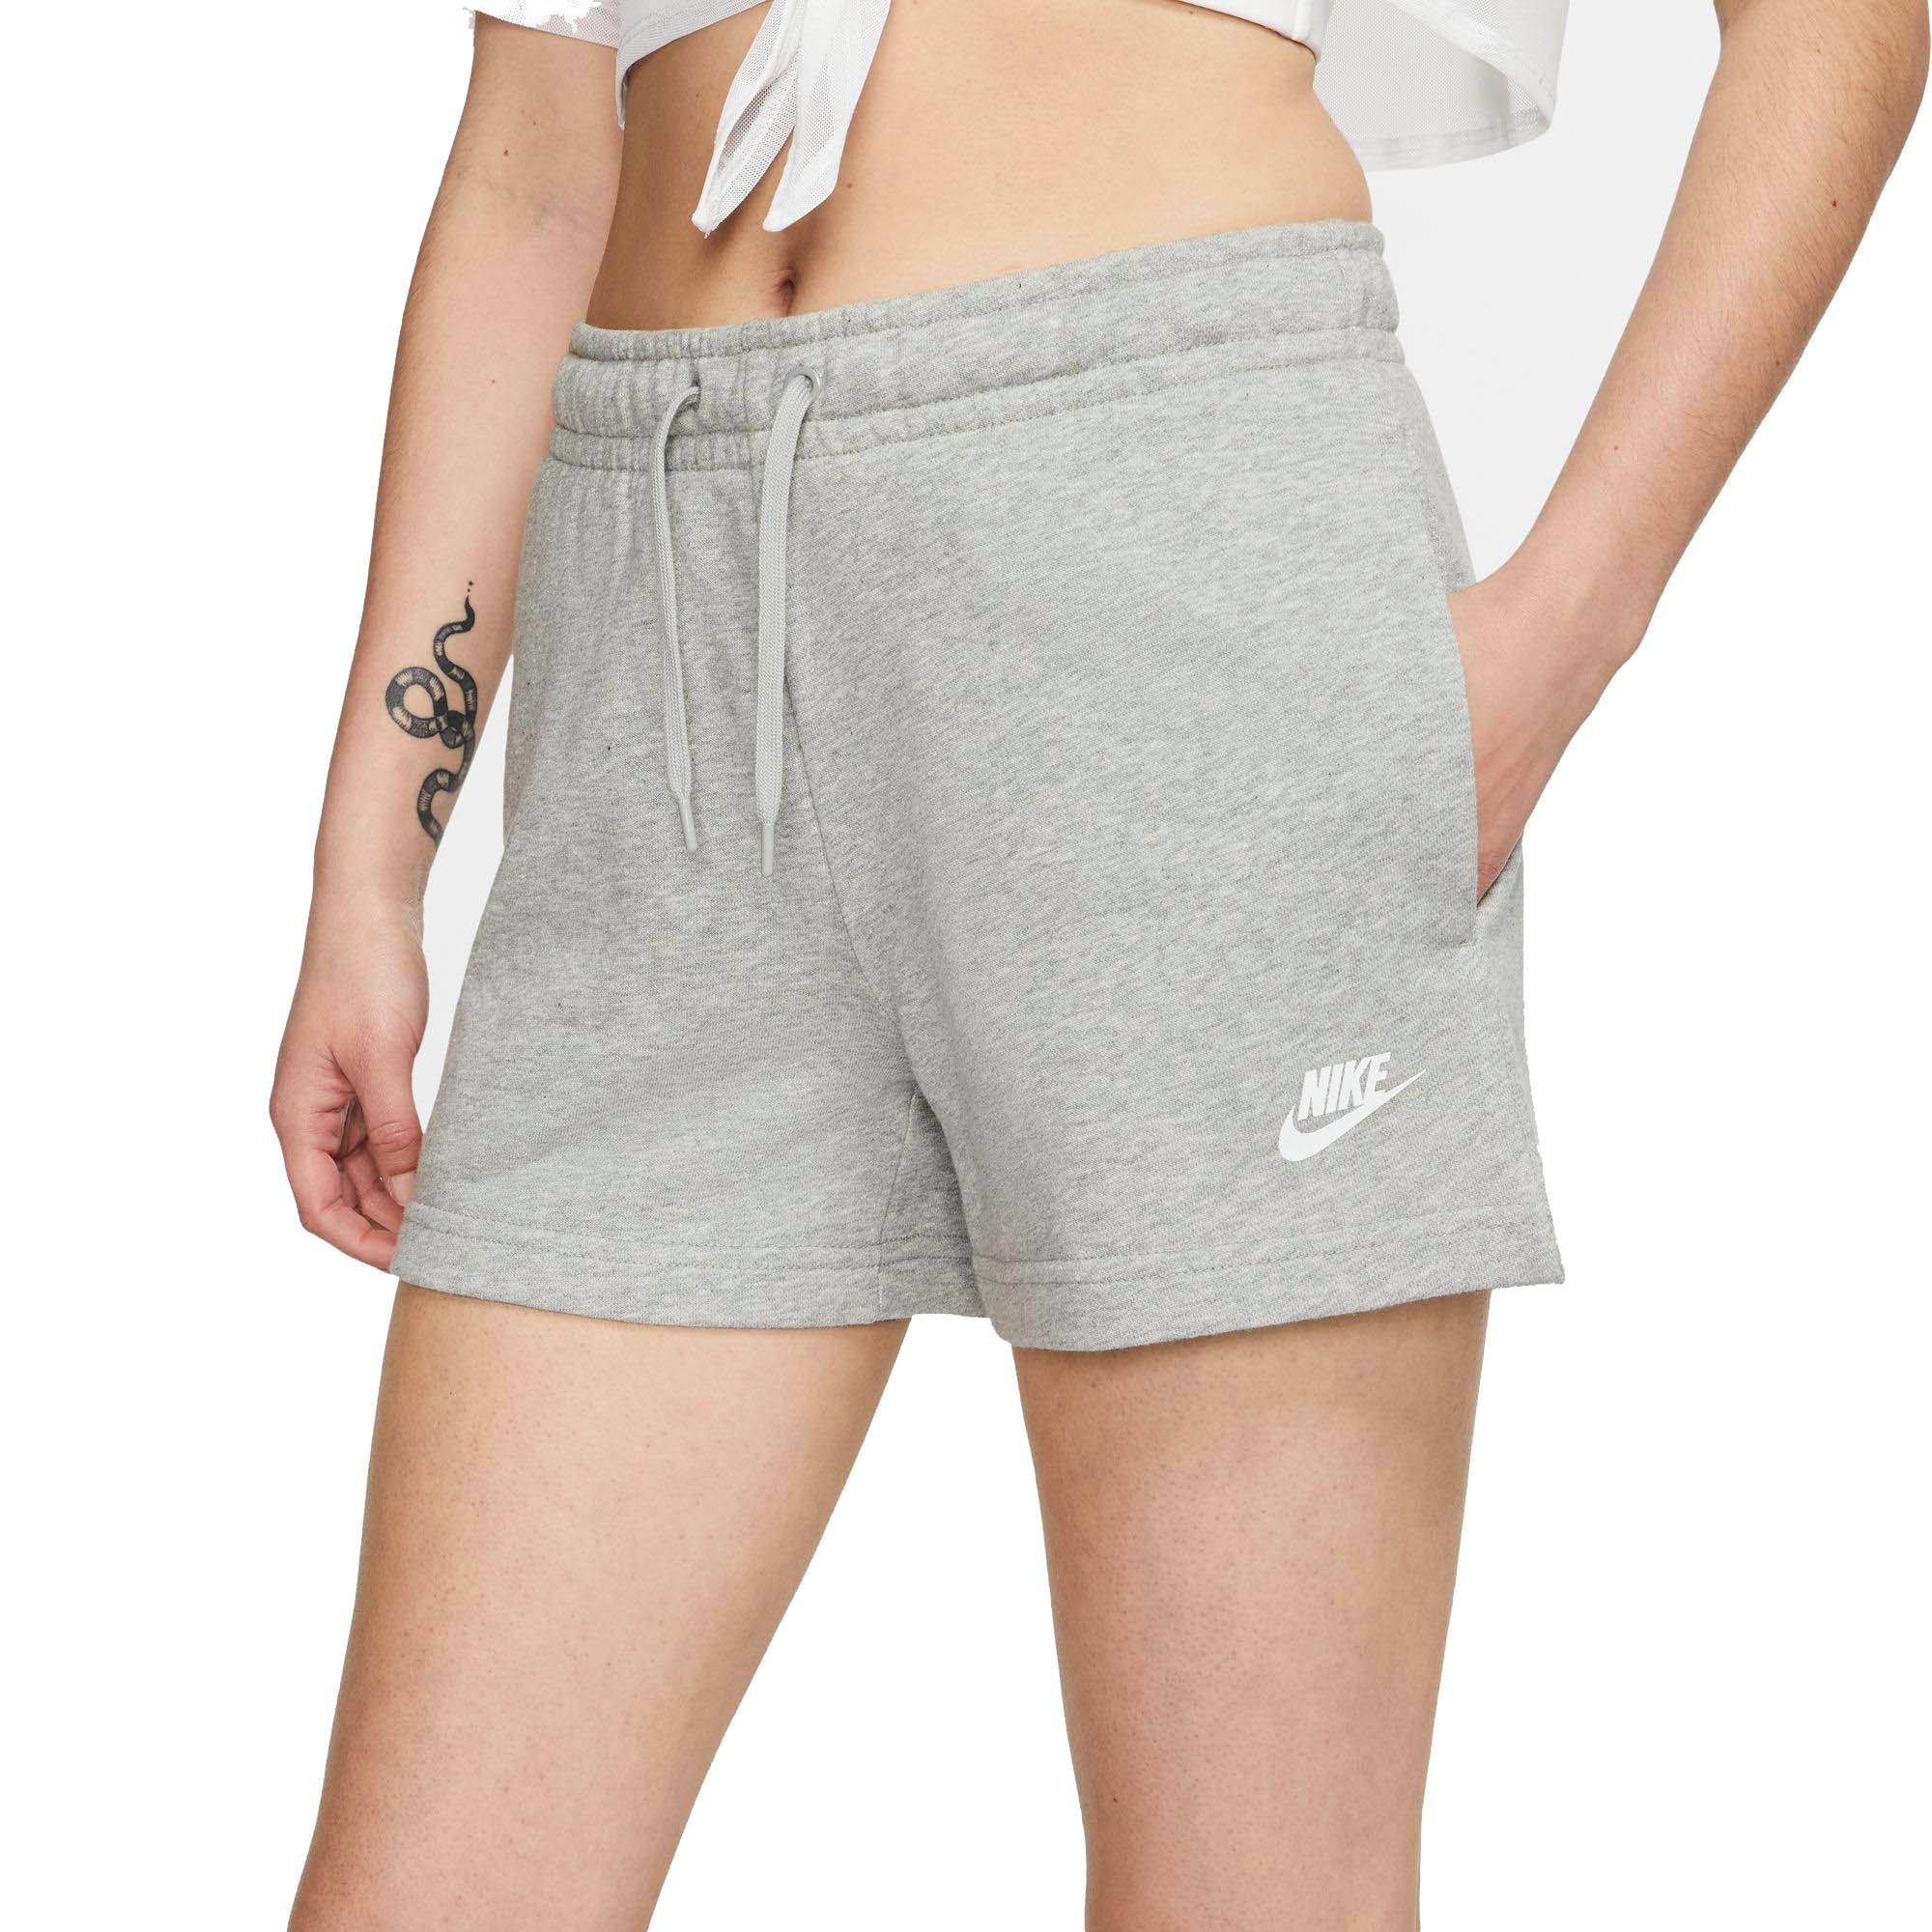 nike sportswear women's shorts